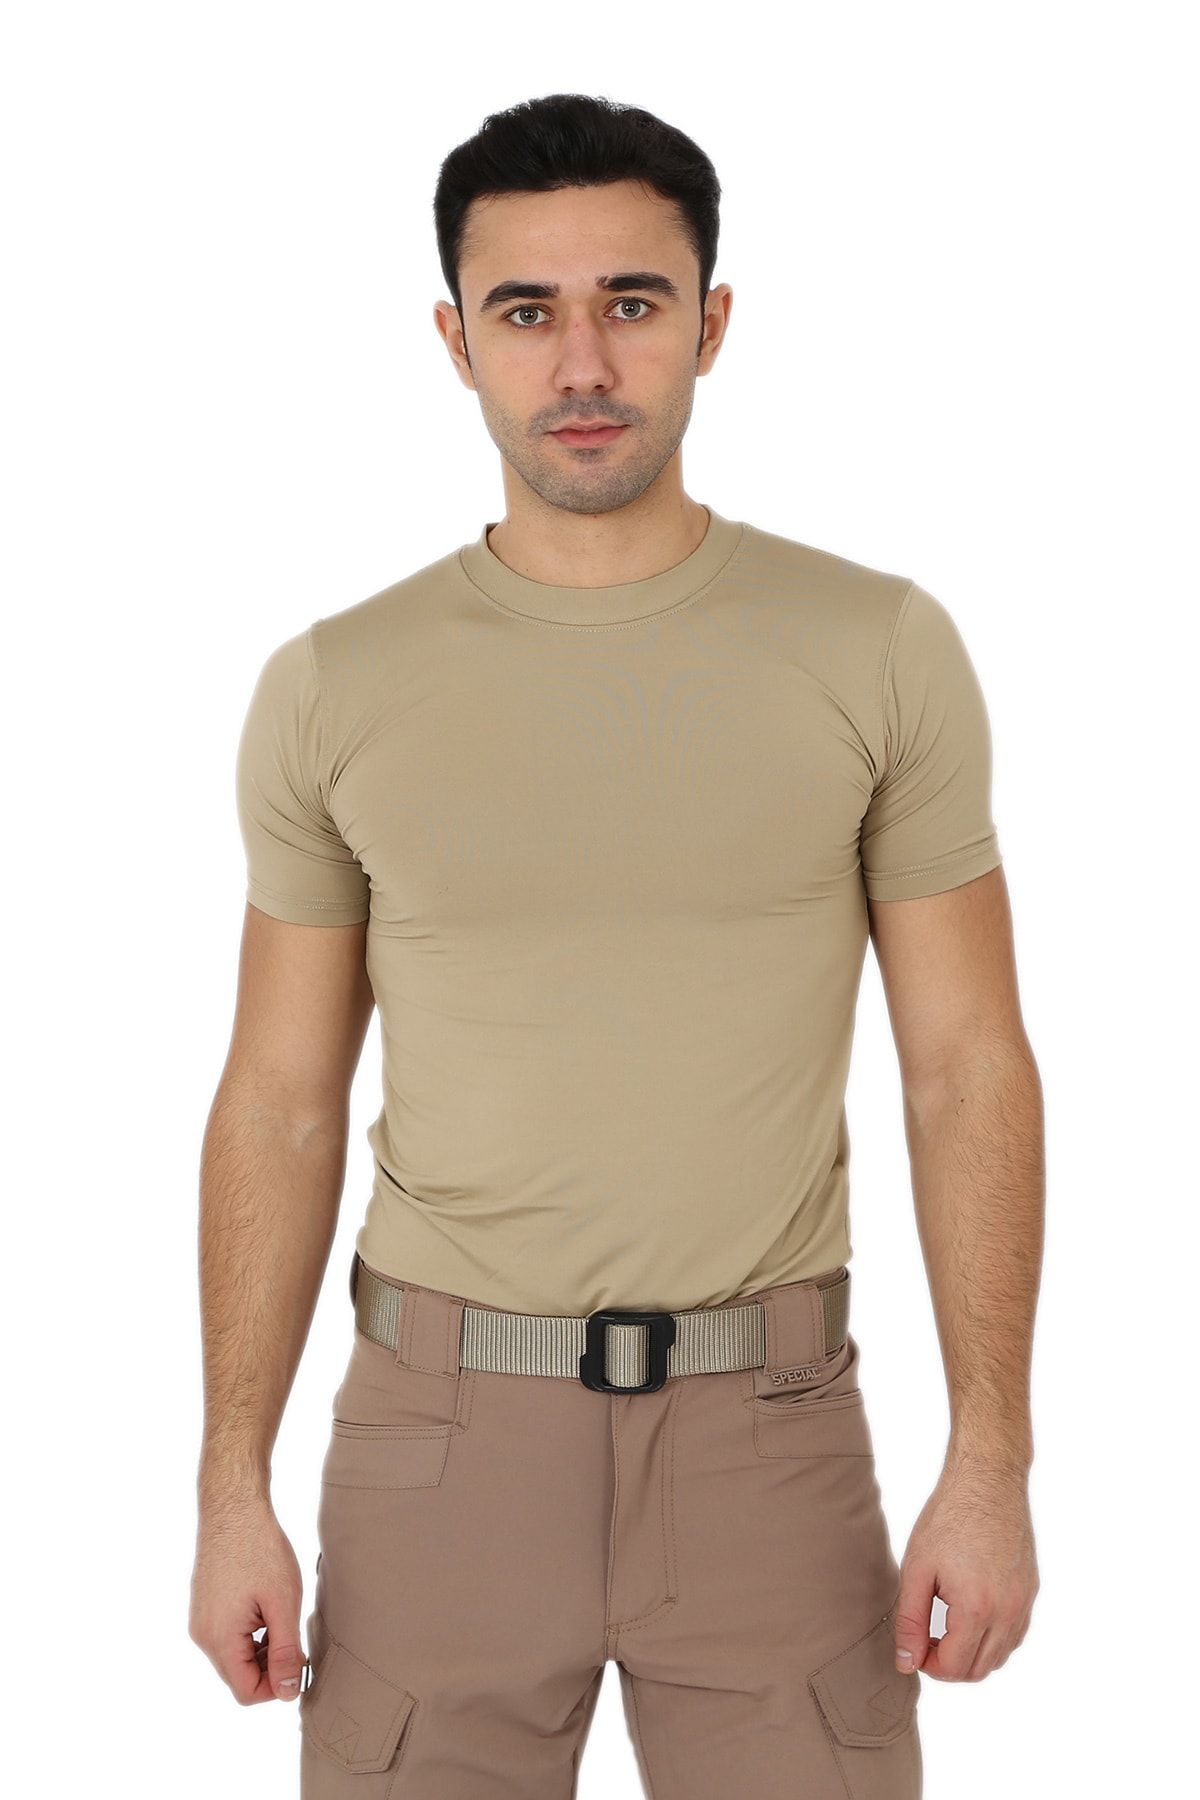 Asker Marketi Erkek Bej Microfiber Tişört Kısa Kol Micro Askeri Malzeme T-shirt